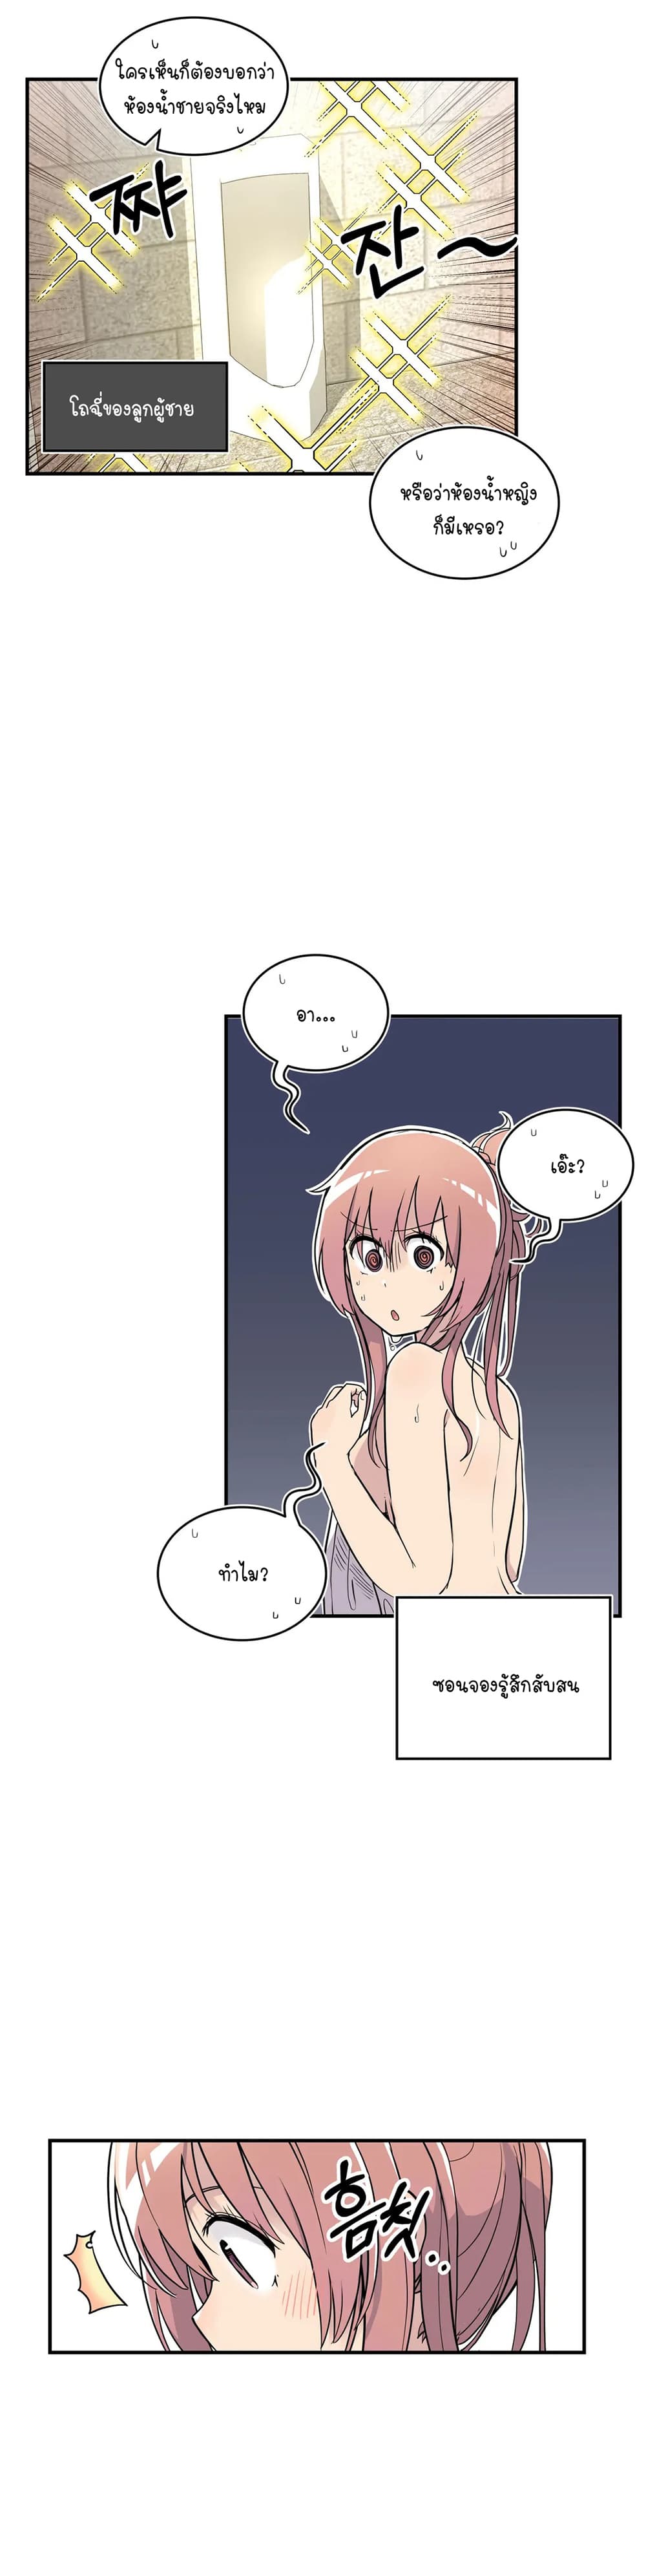 Erotic Manga Club ชมรมการ์ตูนอีโรติก 27 (14)